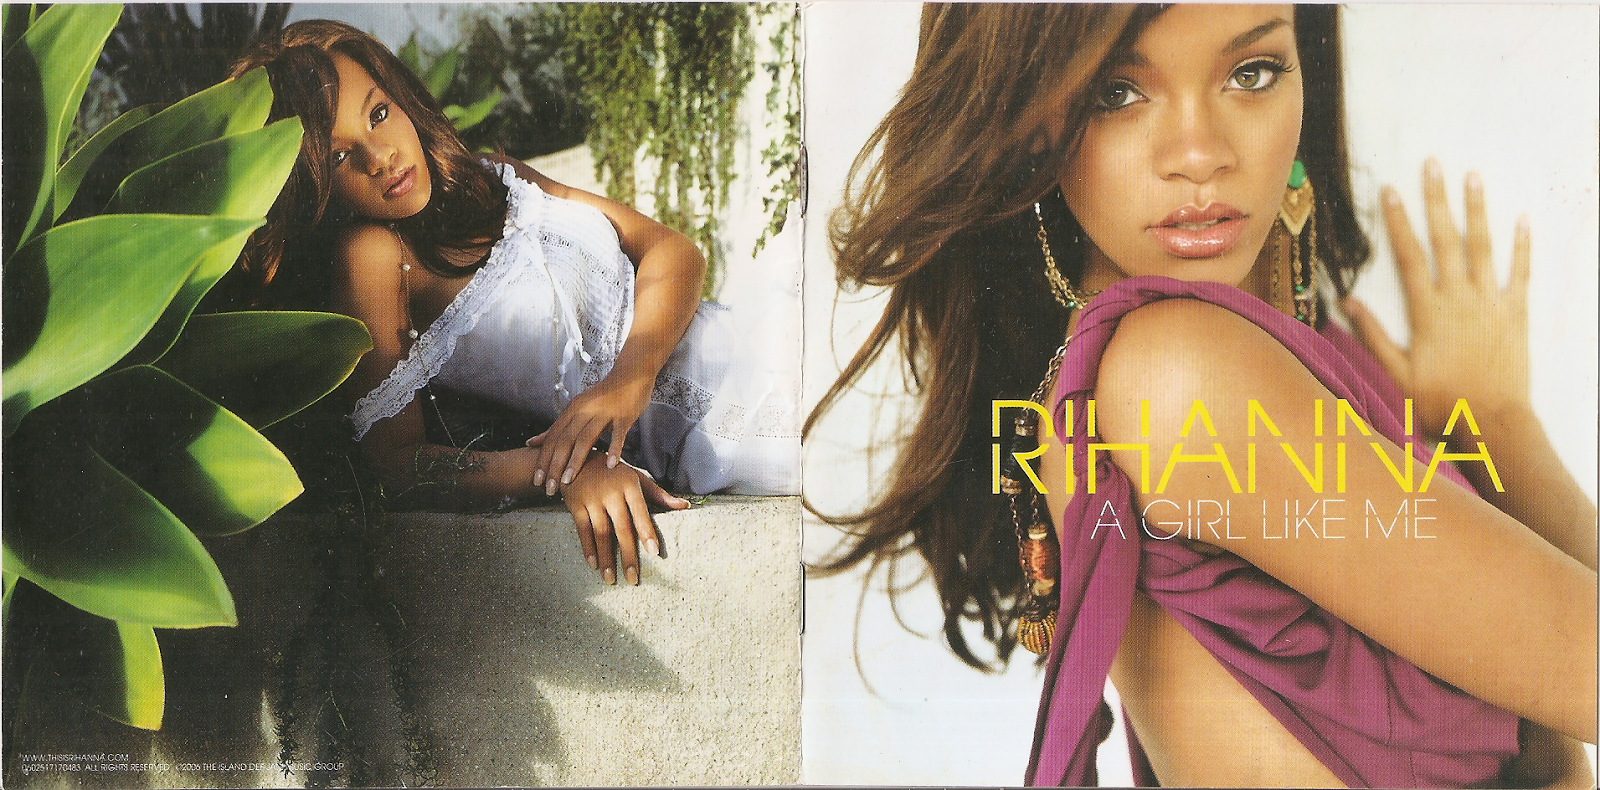 I like girl they like me. Rihanna - 2006 a girl like me. A girl like me Рианна Vinyl. A girl like me обложка. Rihanna a girl like me обложка для альбома.